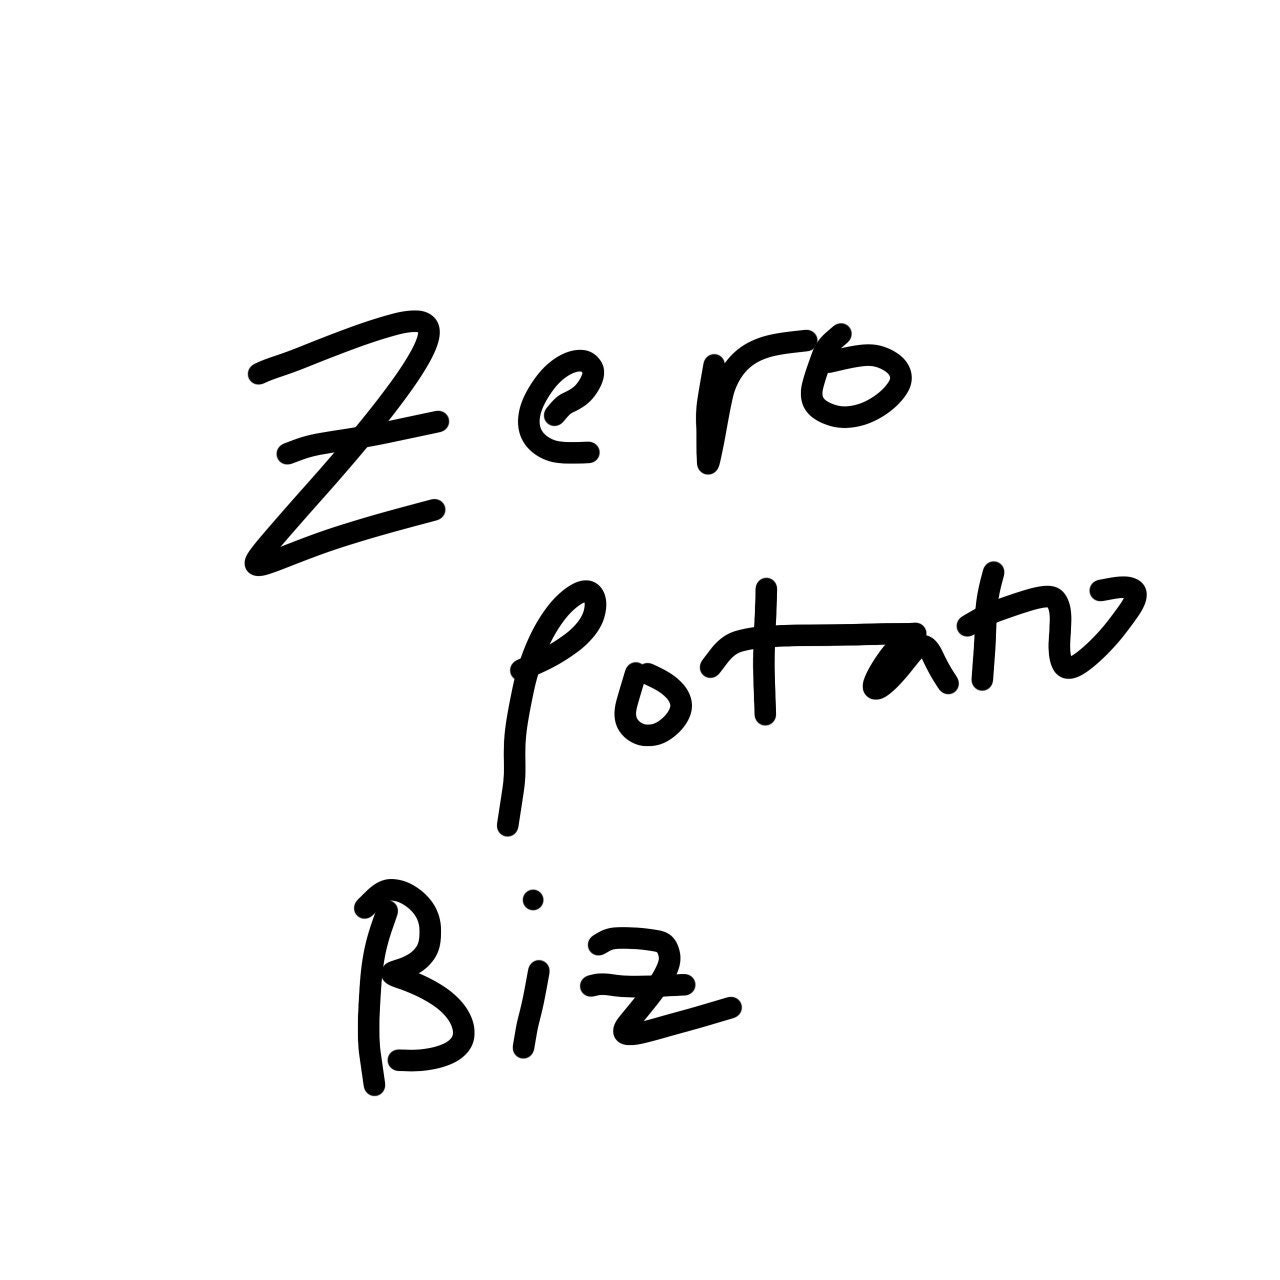 ZeroPotatobiz - Etsy